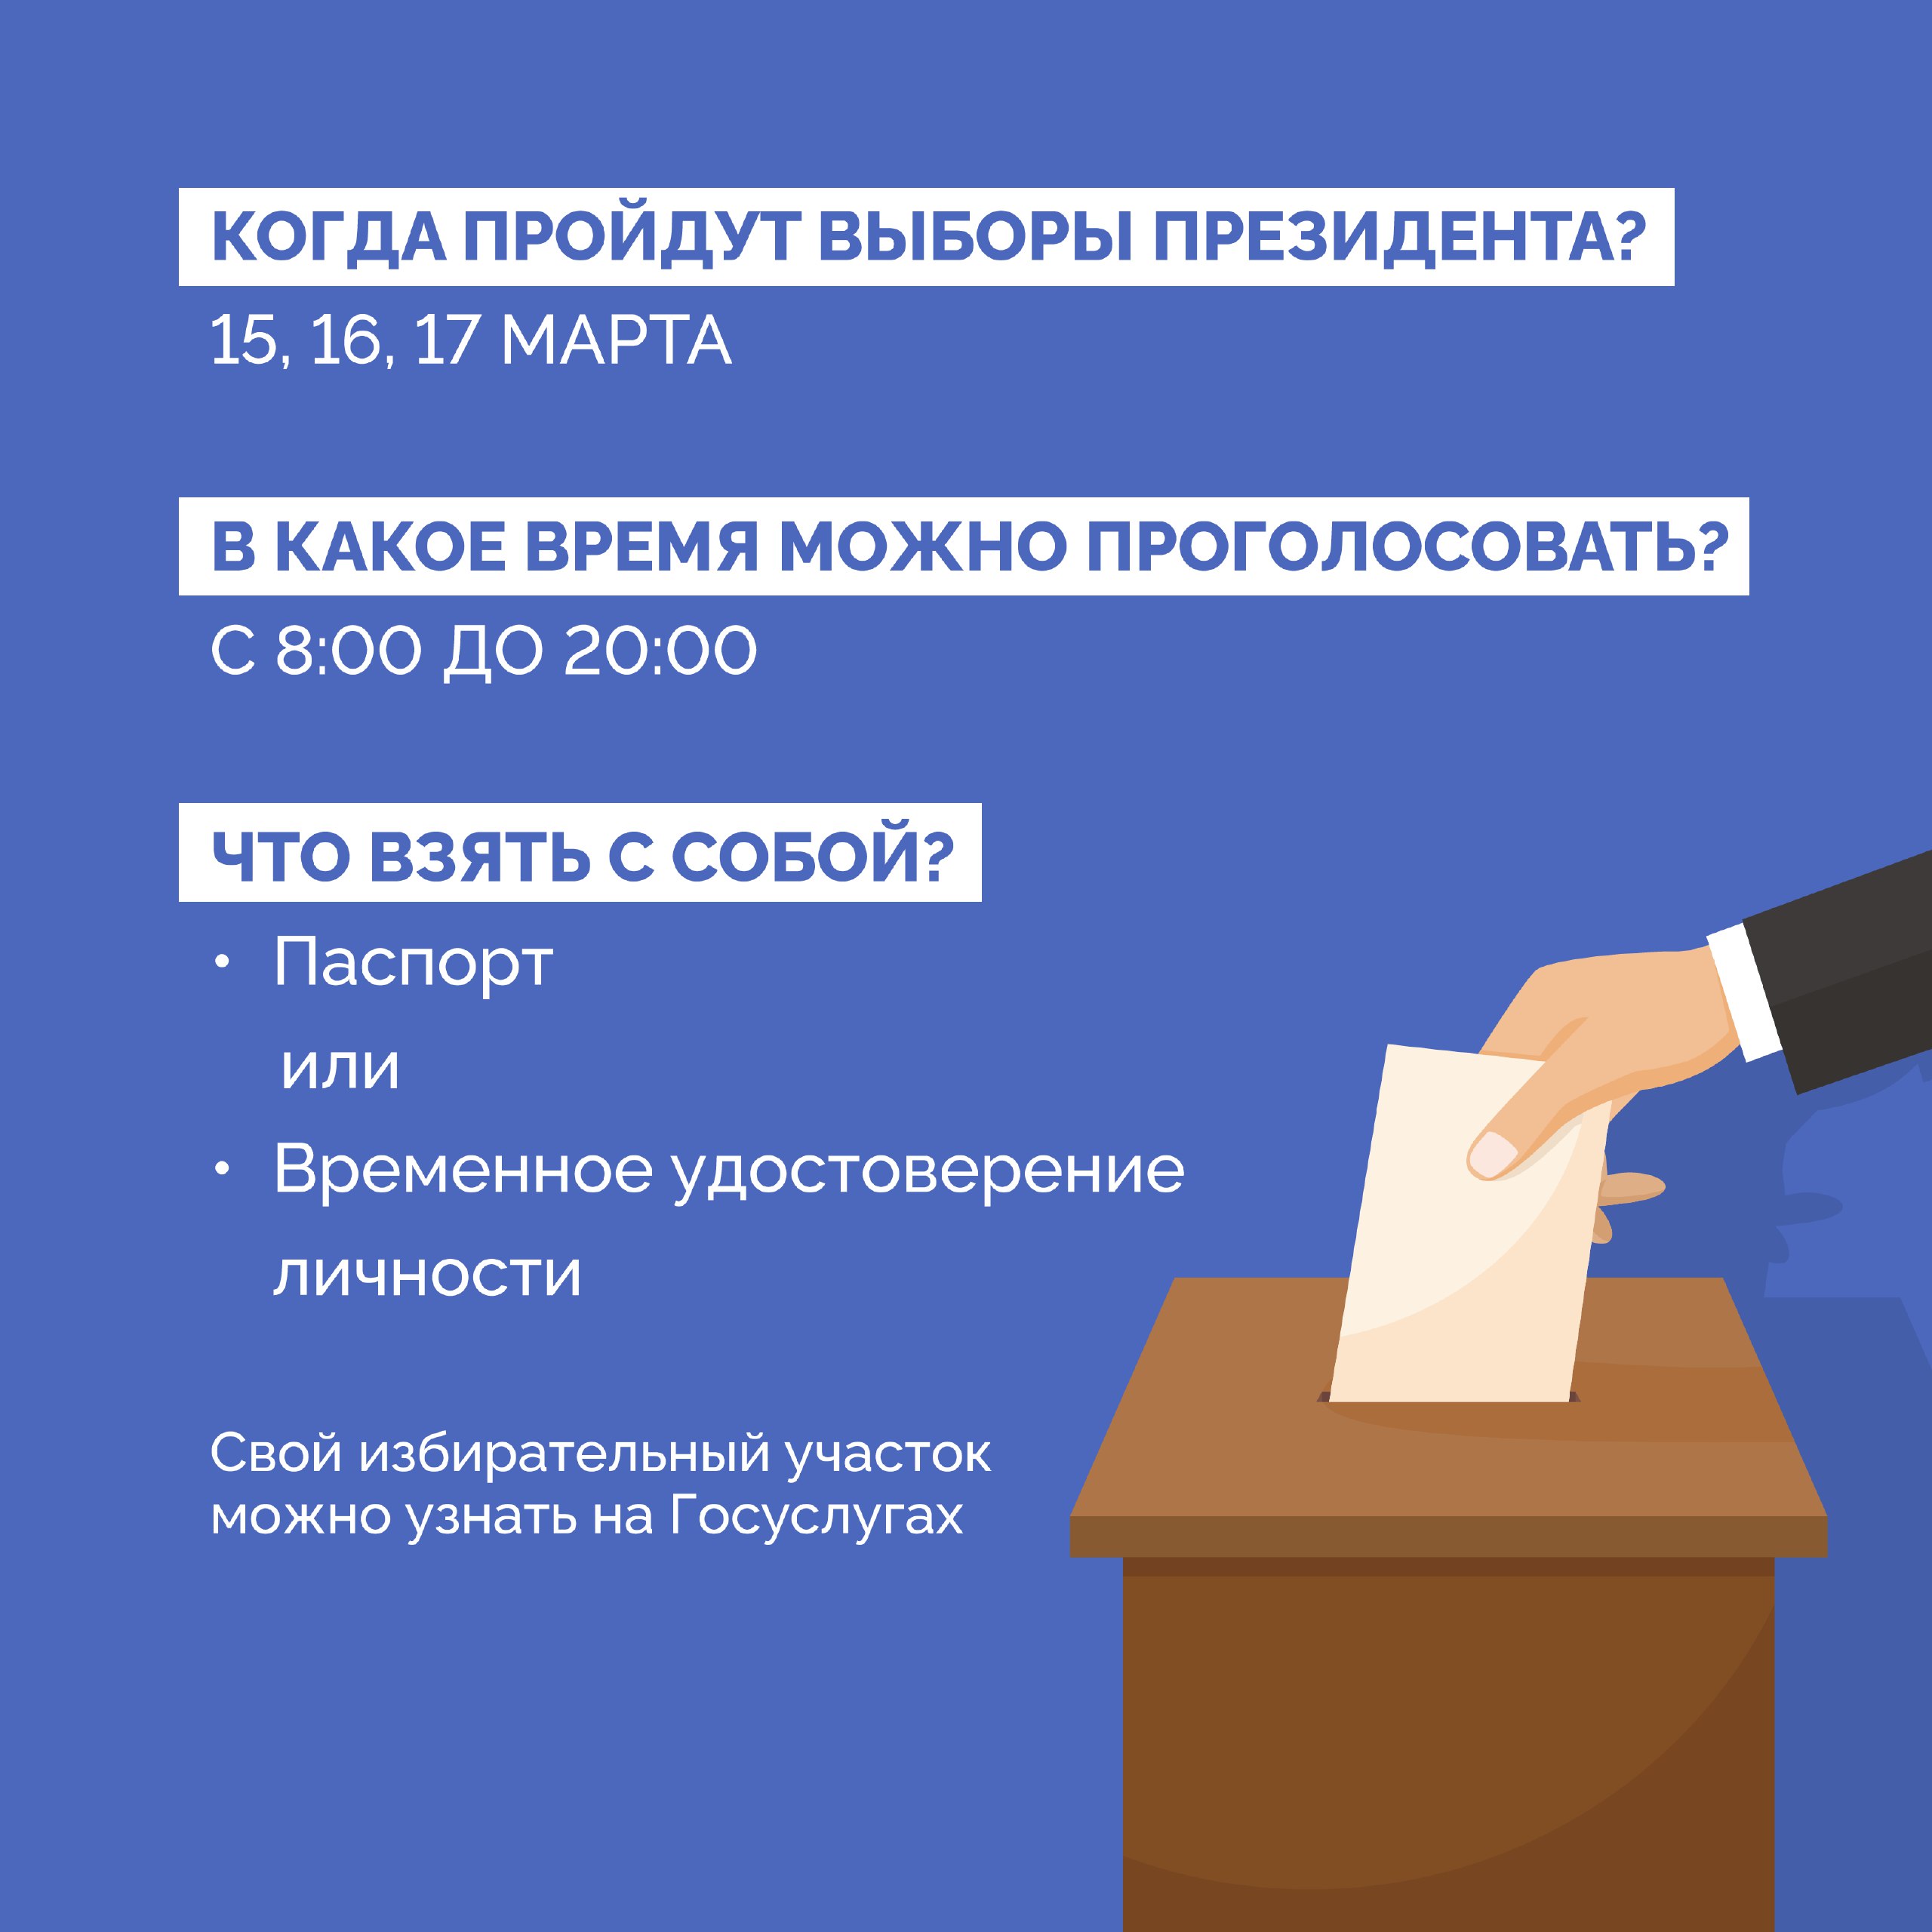 15 марта стартуют выборы президента России.